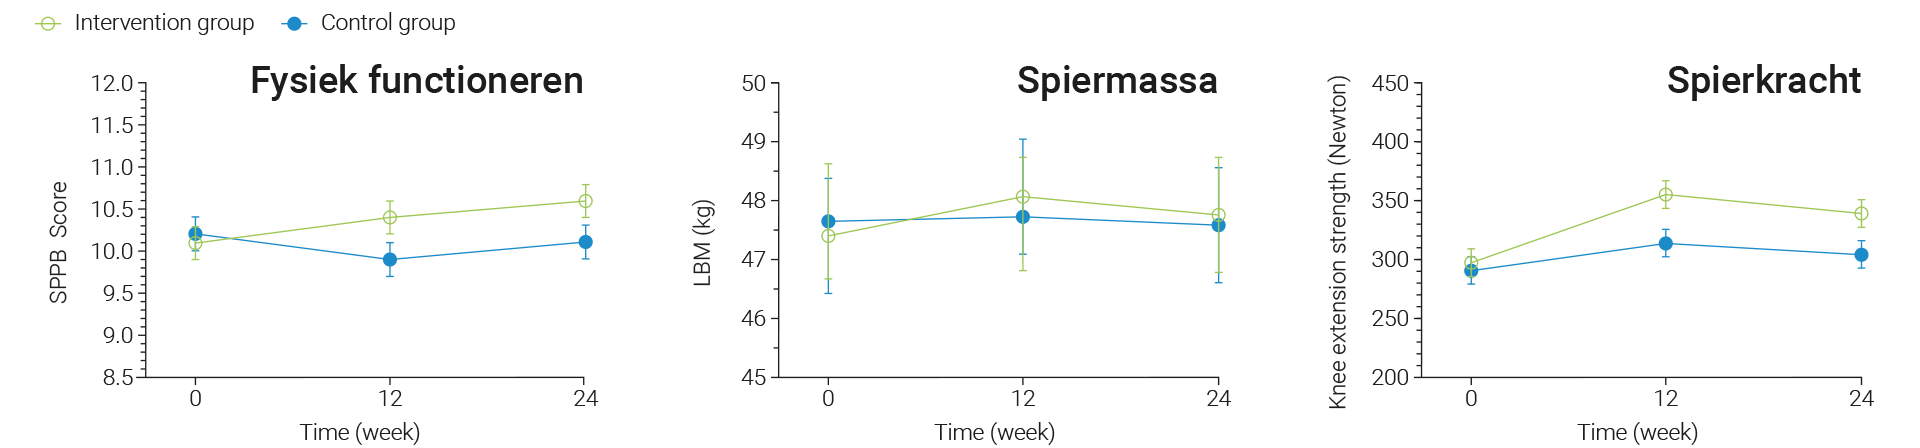 Werkzame elementen van ProMuscle zijn de spierkrachttraining in combinatie met eiwitinname.